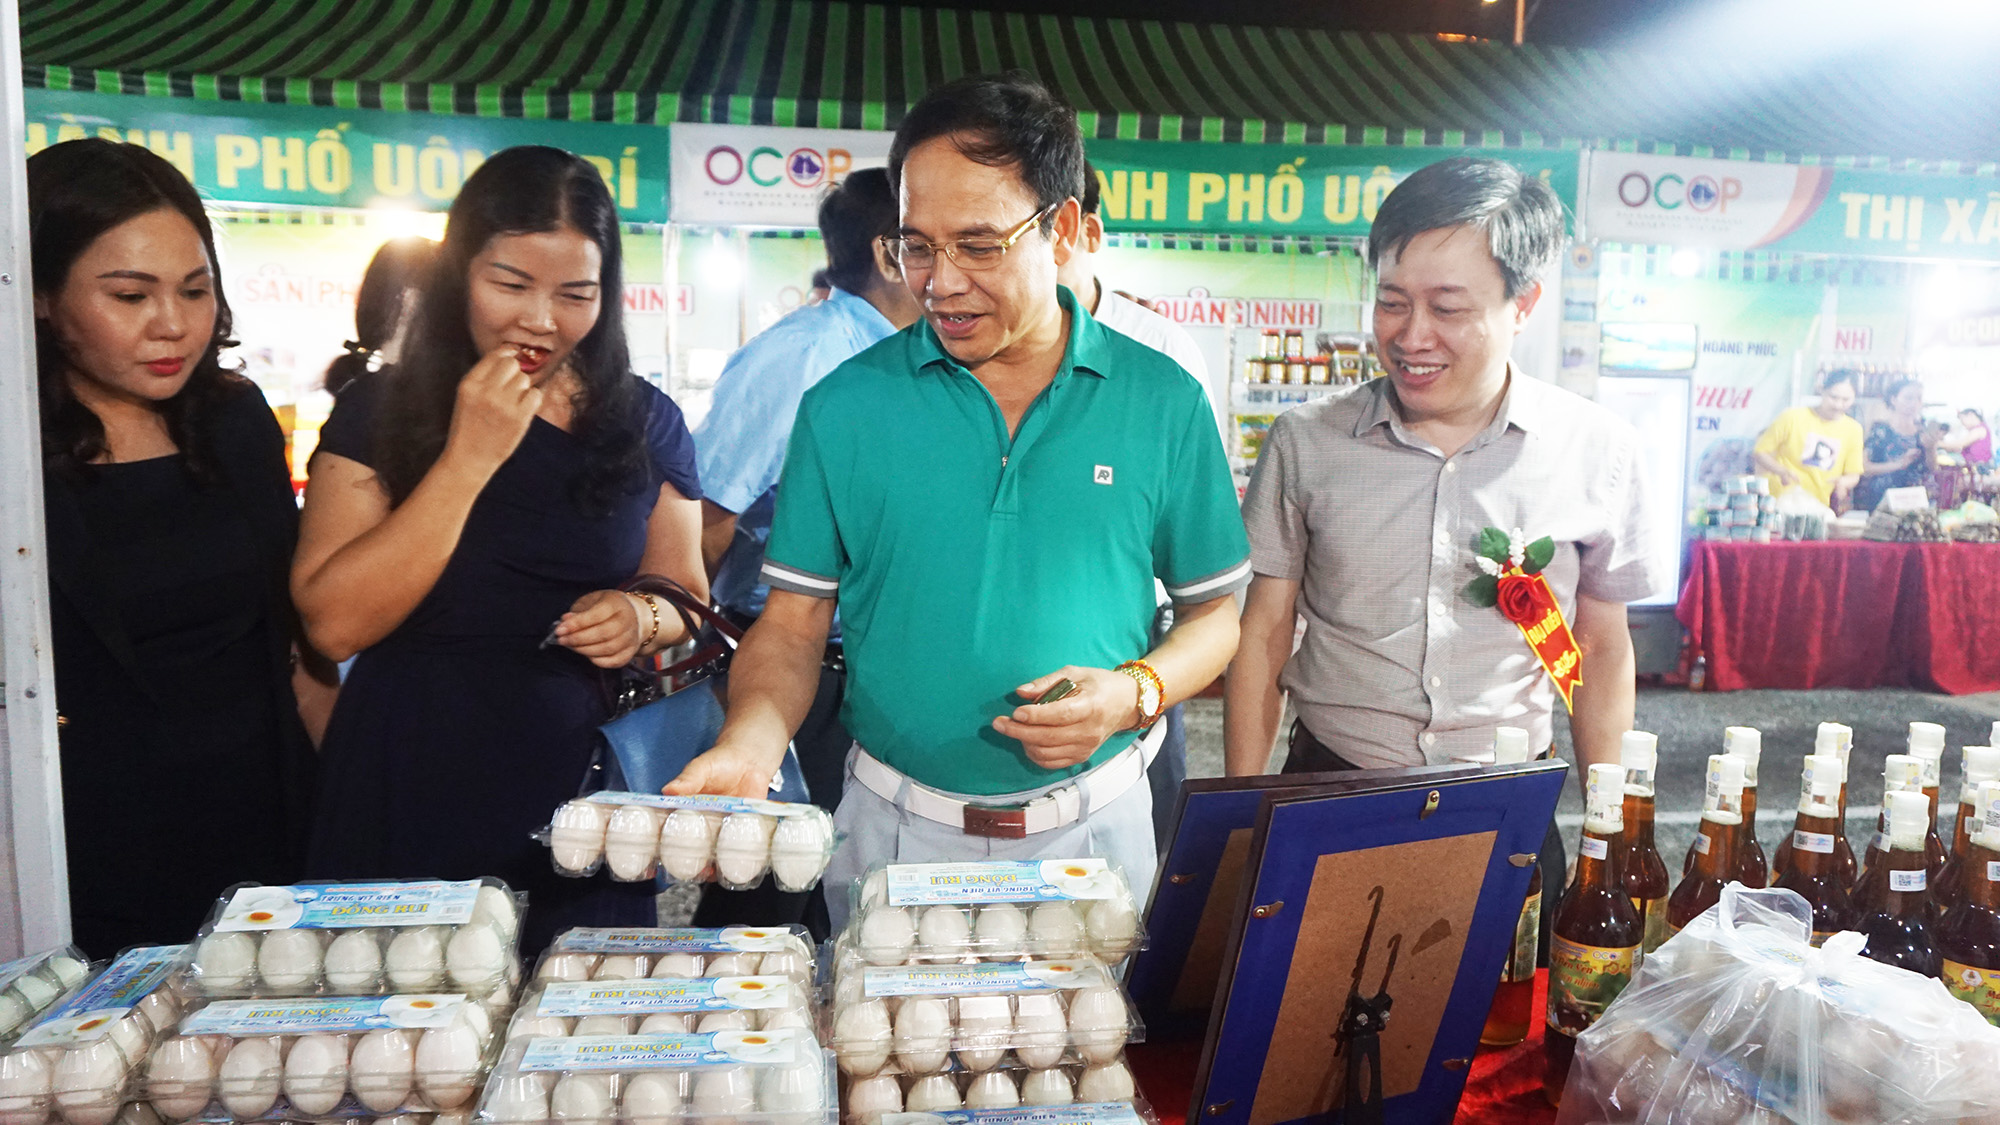 Sản phẩm trứng vịt Đồng Rui được bày bán tại Hội chợ OCOP Quảng Ninh - Hè 2020.